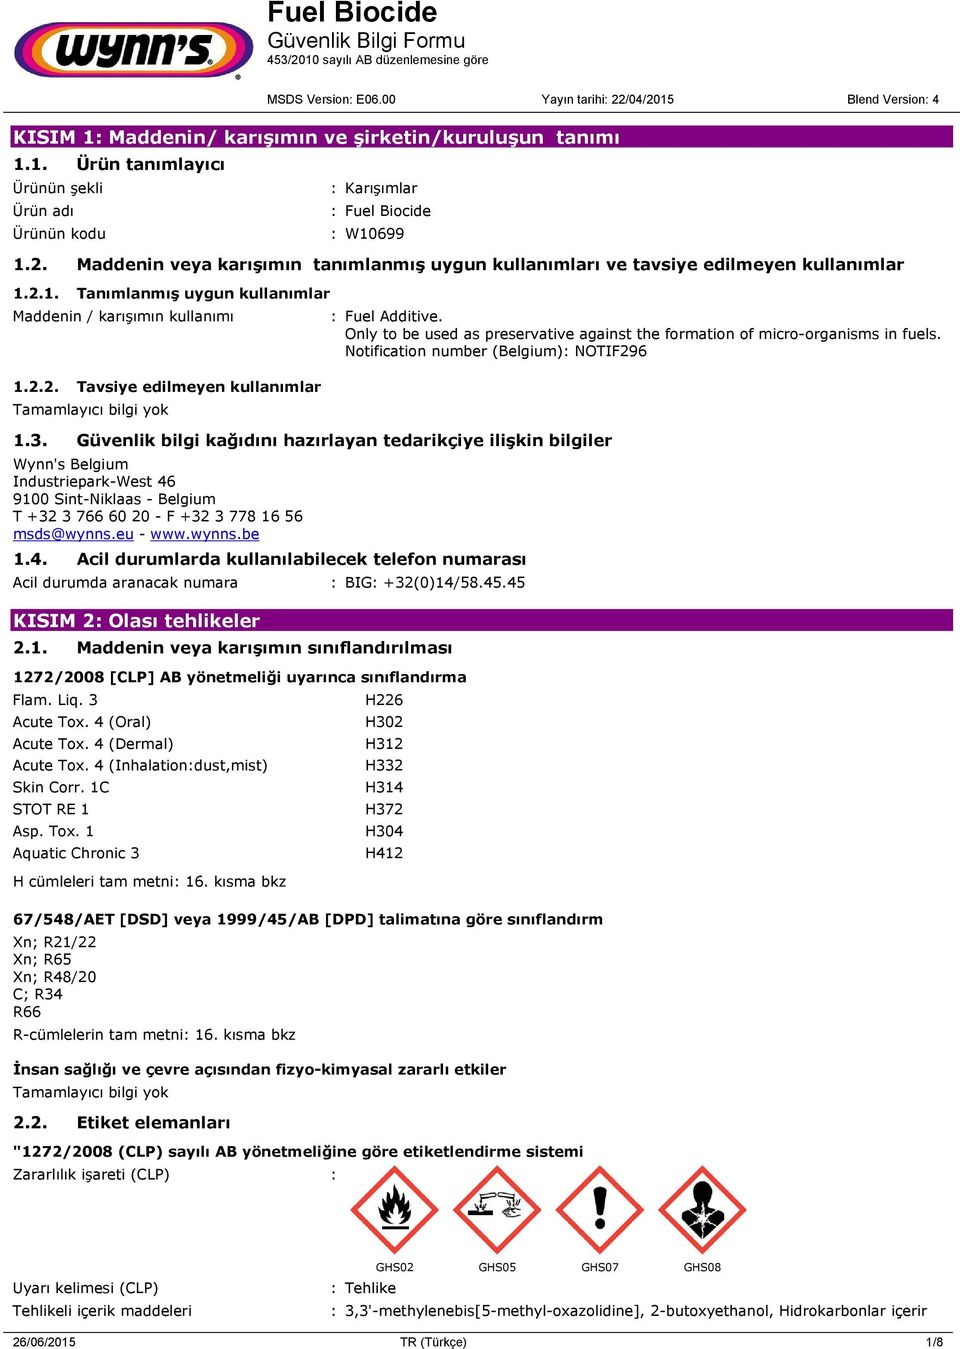 Güvenlik bilgi kağıdını hazırlayan tedarikçiye ilişkin bilgiler Wynn's Belgium Industriepark-West 46 9100 Sint-Niklaas - Belgium T +32 3 766 60 20 - F +32 3 778 16 56 msds@wynns.eu - www.wynns.be 1.4. Acil durumlarda kullanılabilecek telefon numarası Acil durumda aranacak numara : BIG: +32(0)14/58.